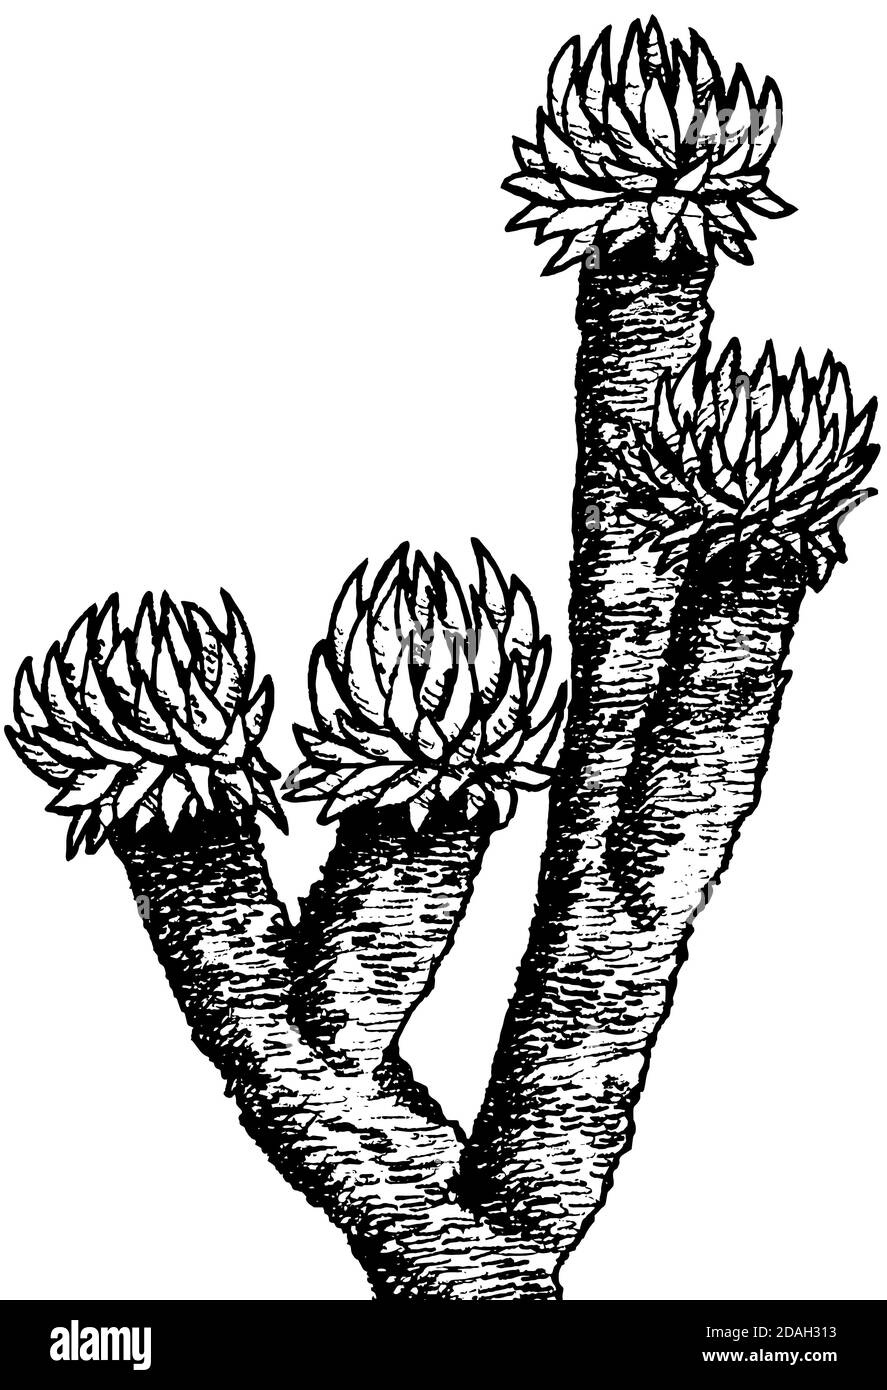 Arbusti di Senecio gigante, una pianta endemica di terre aride e rocciose intorno al Monte Kilimanjaro. Un simbolo africano della Tanzania. Disegno dell'inchiostro. Foto Stock